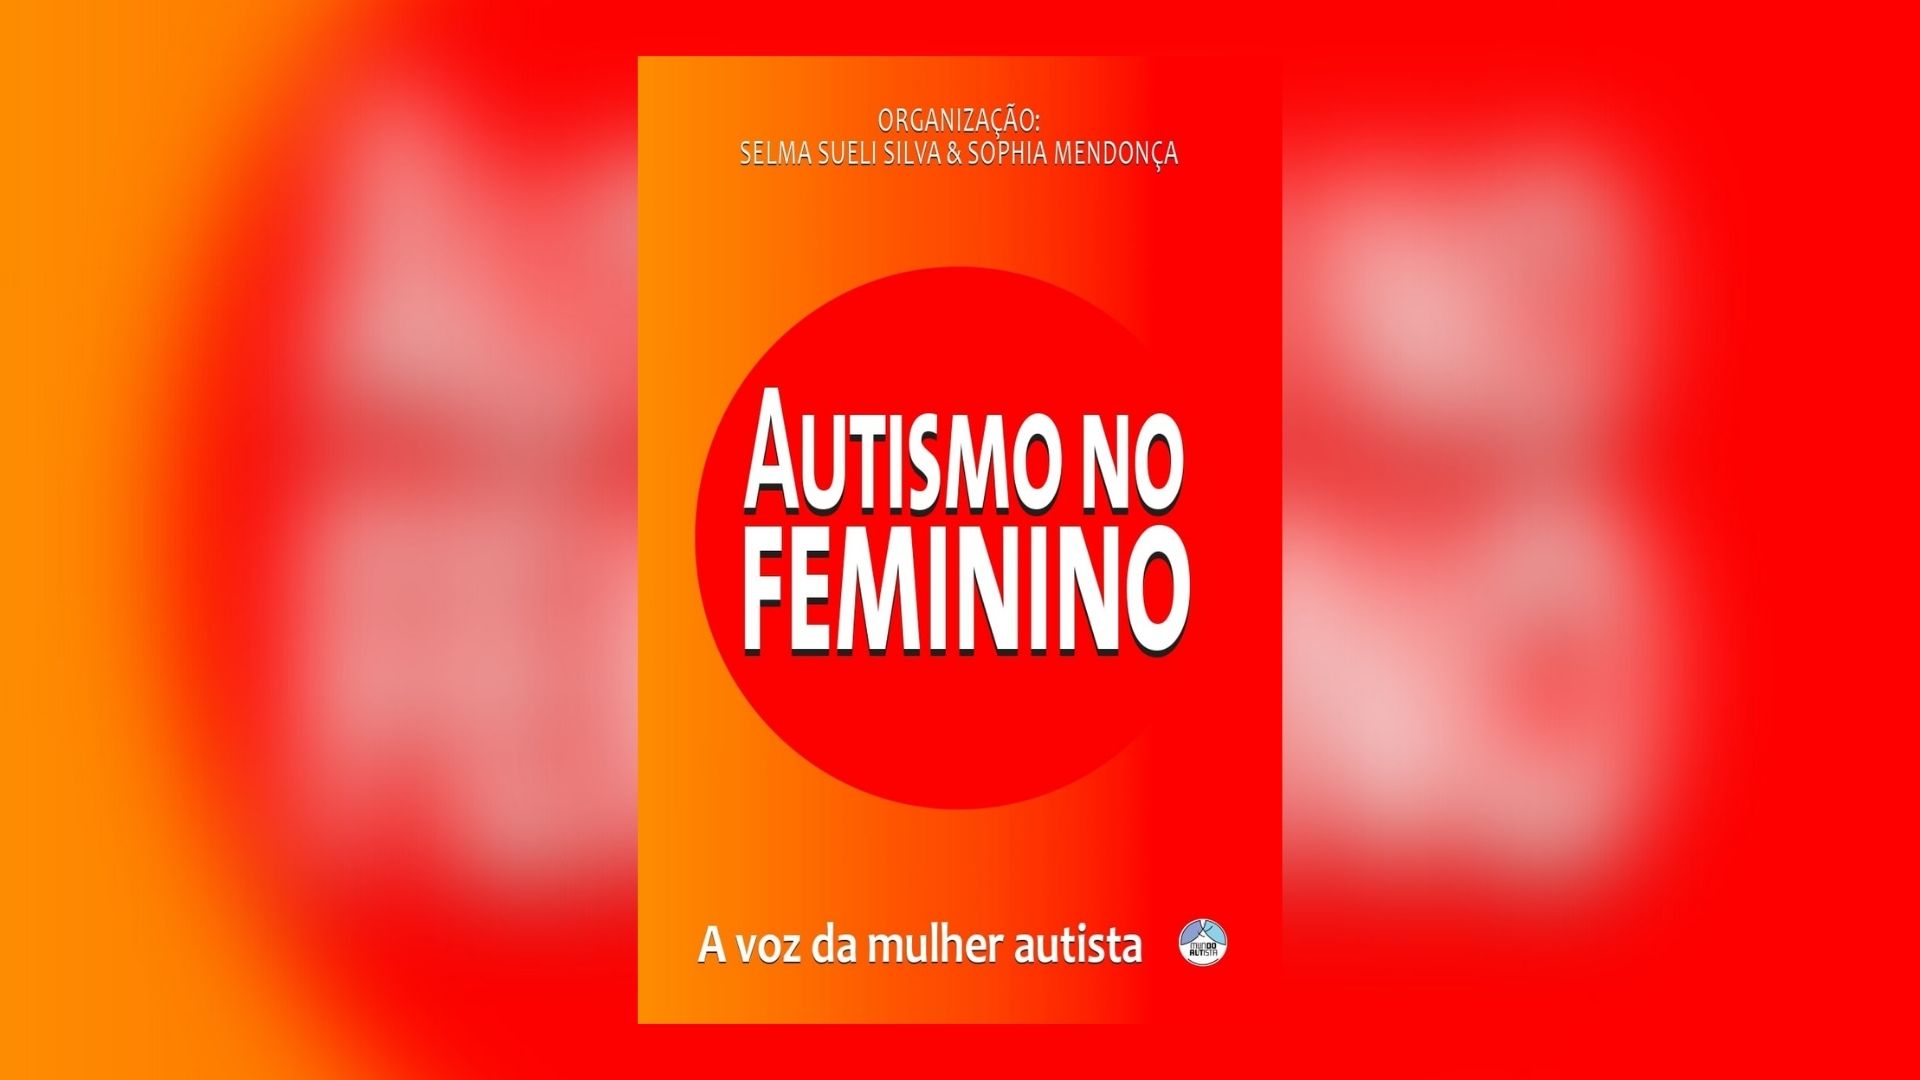 Pré-venda do livro Autismo no Feminino é anunciada — Canal Autismo / Revista Autismo